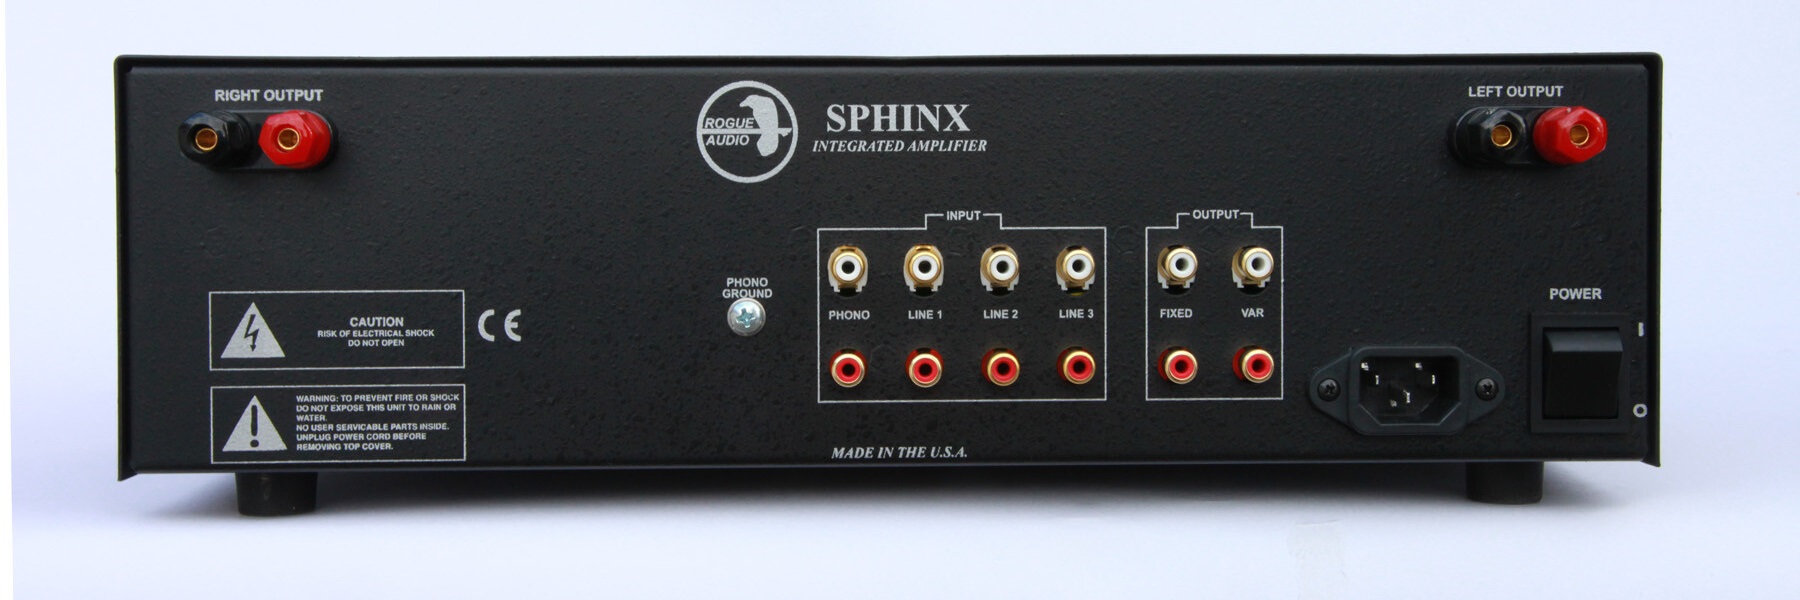 ethisch In beweging Goneryl Review Rogue Audio Sphinx 3 hybride versterker met een hoge resolutie en  vloeiende neutrale klank